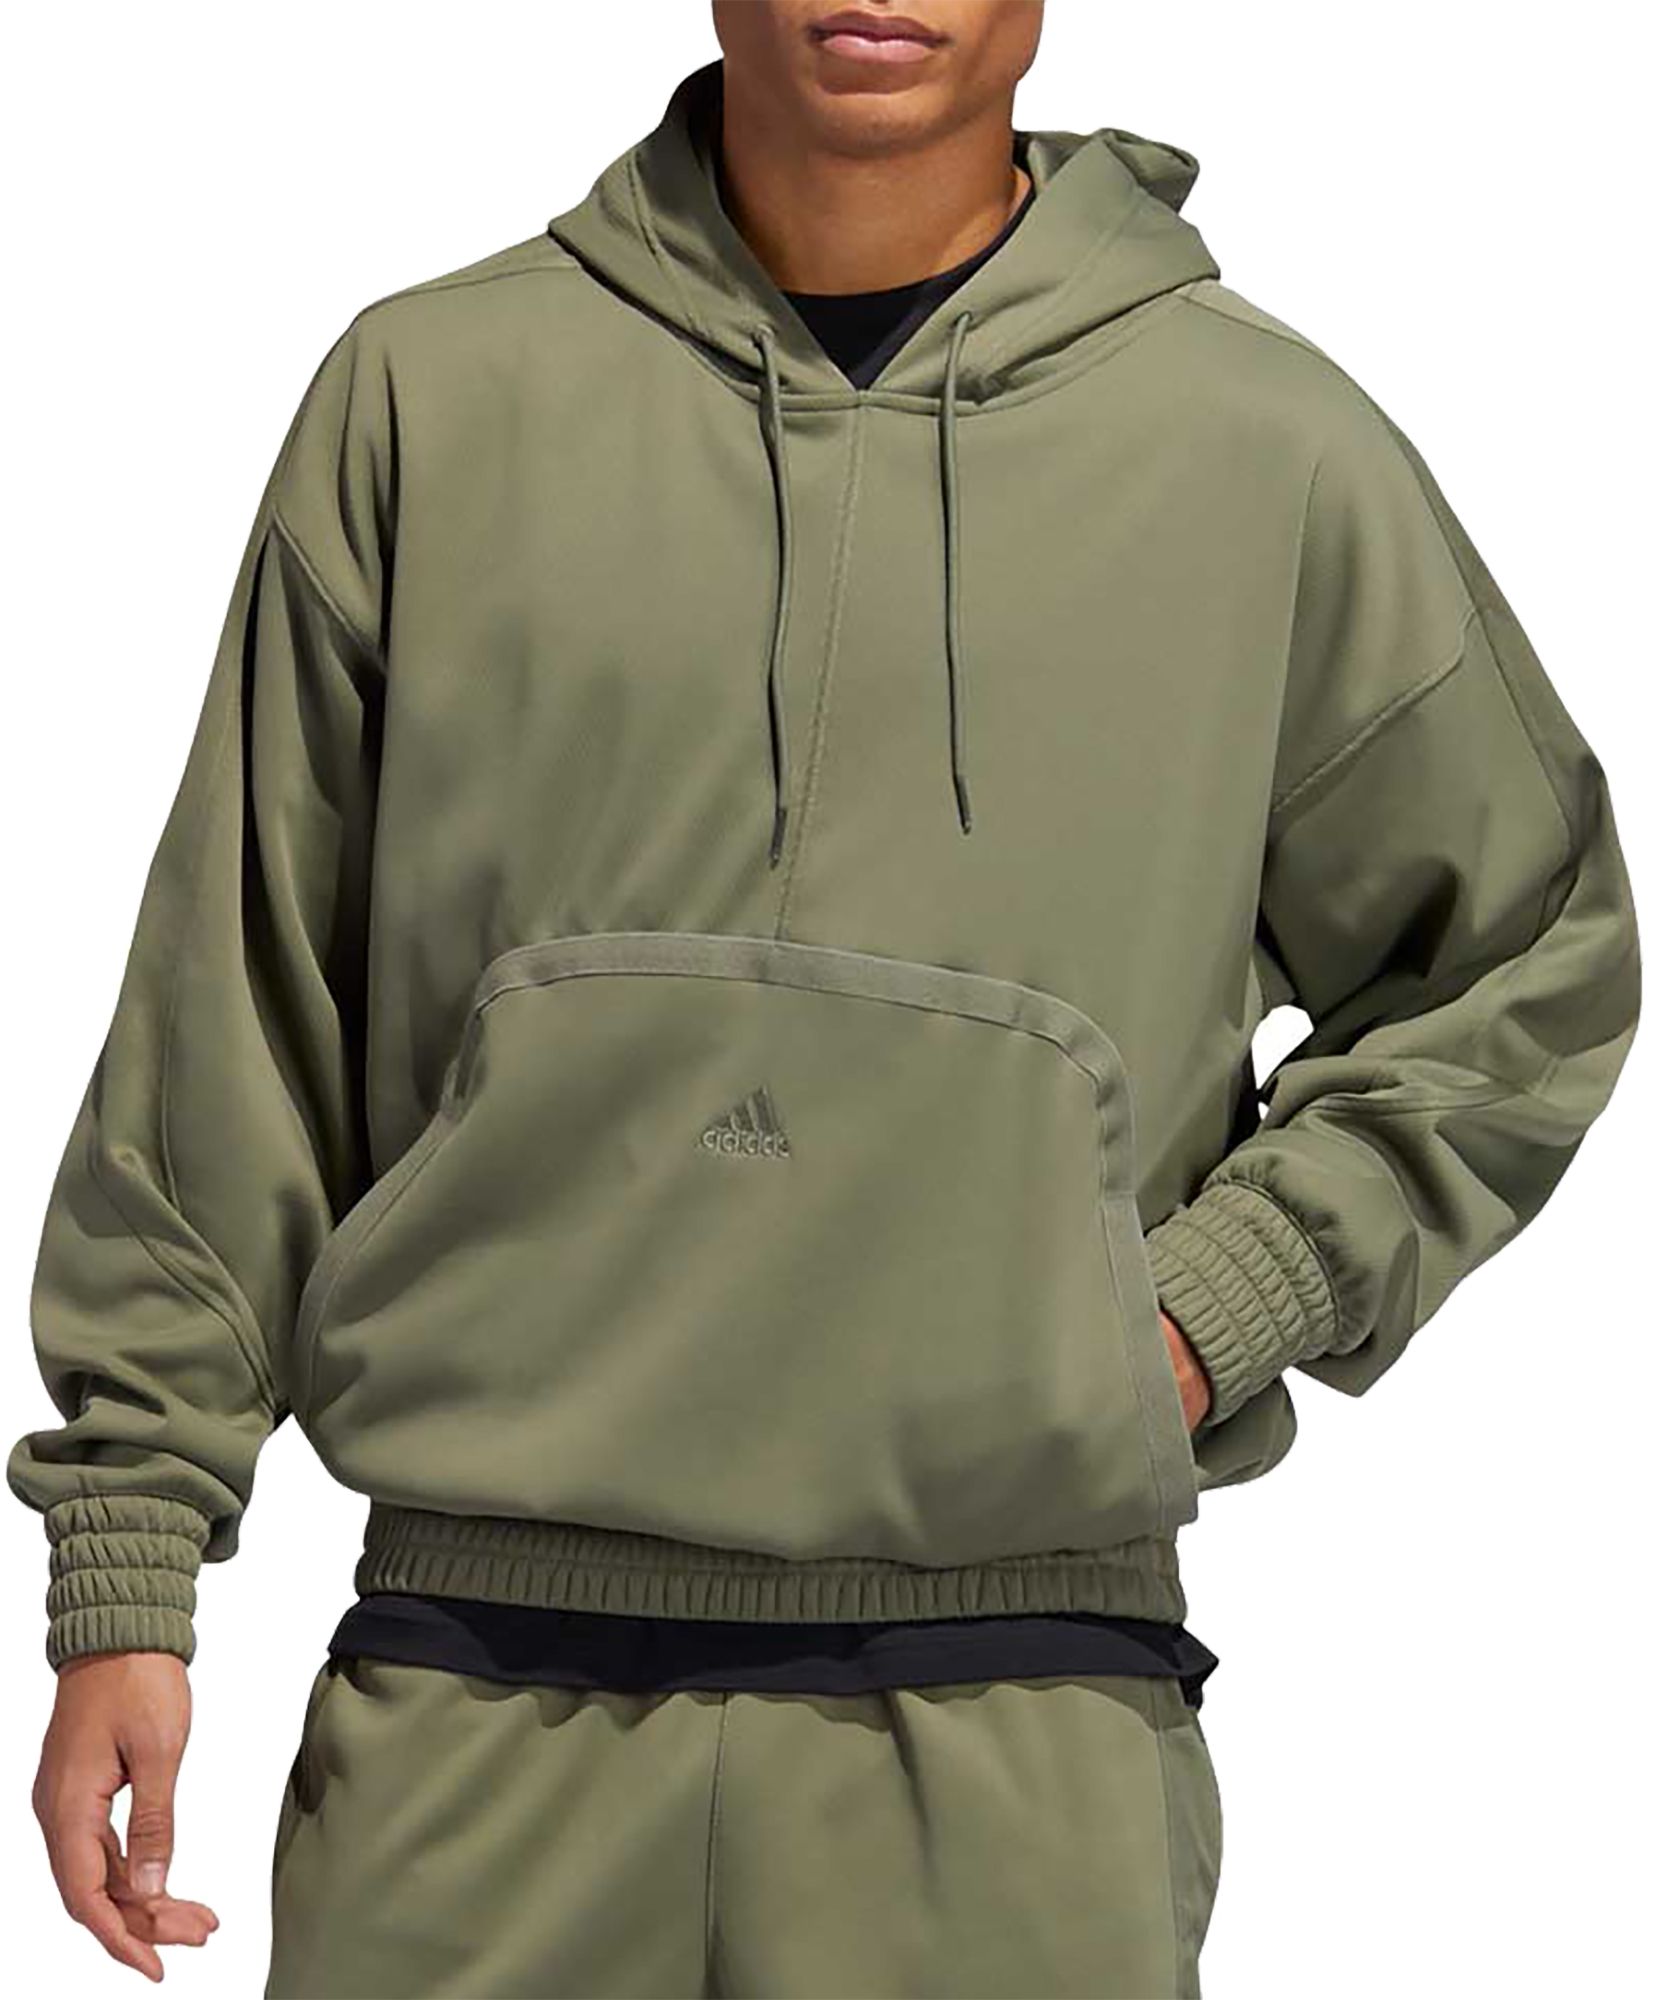 adidas zip up hoodie mens